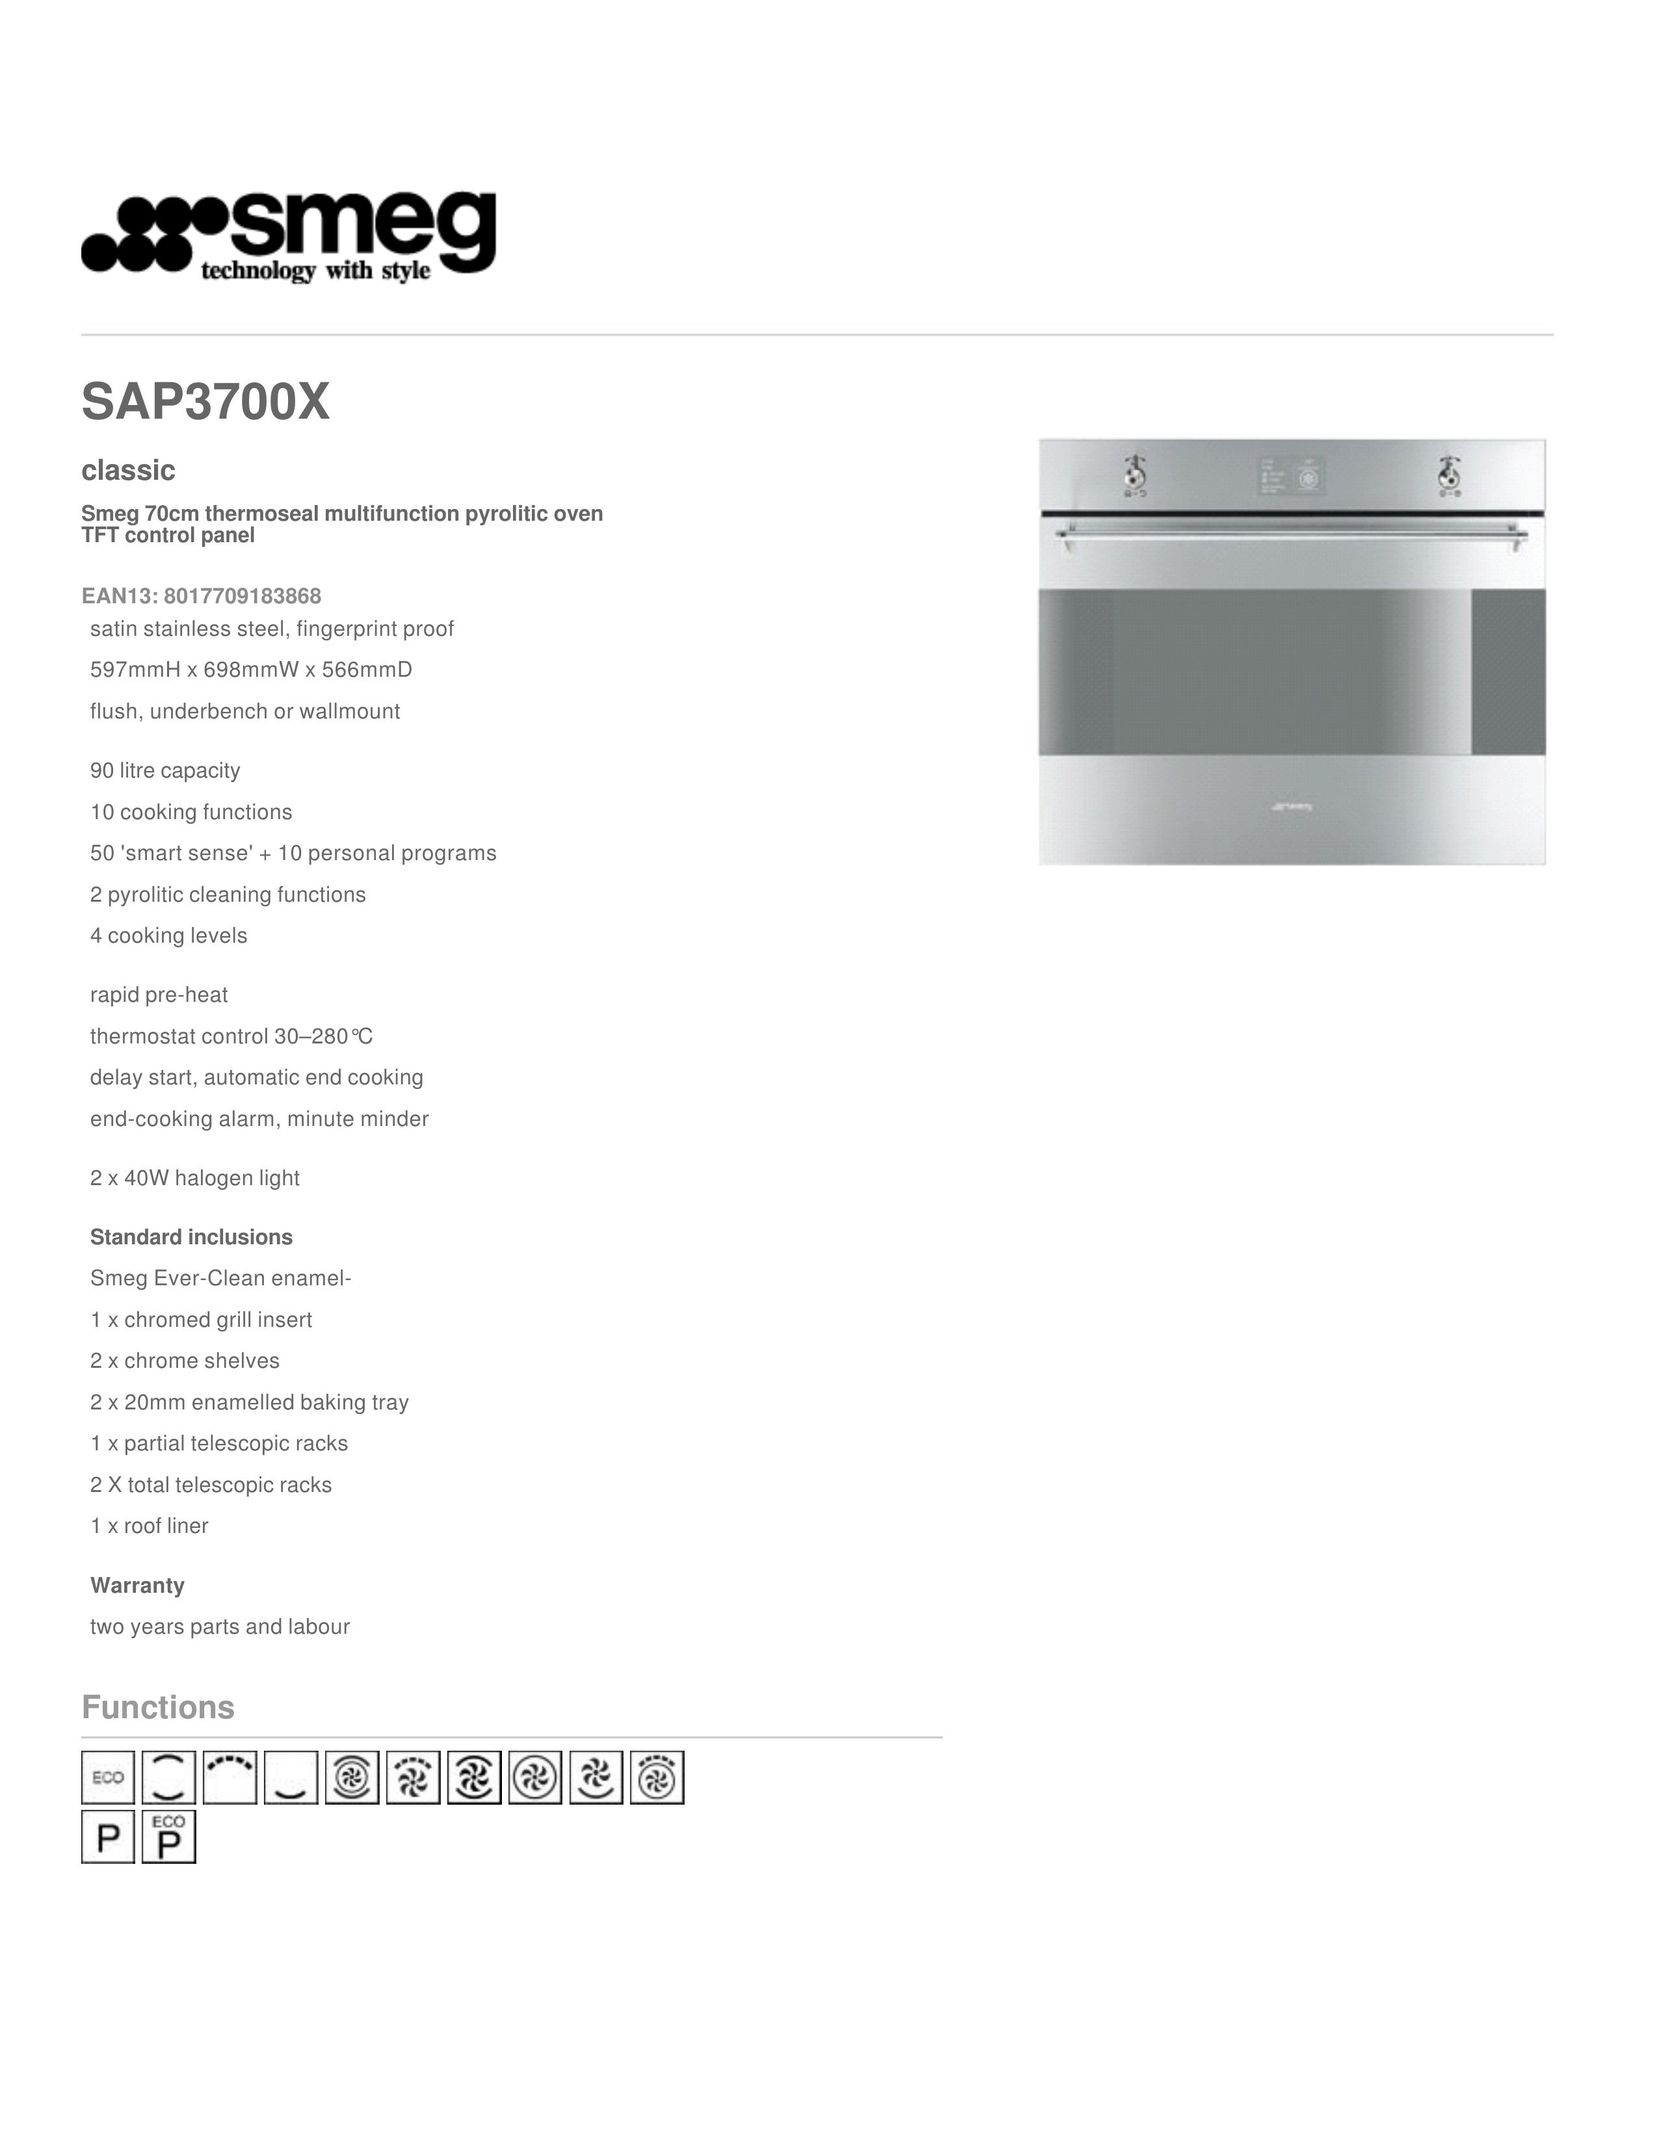 Smeg SAP3700X Convection Oven User Manual